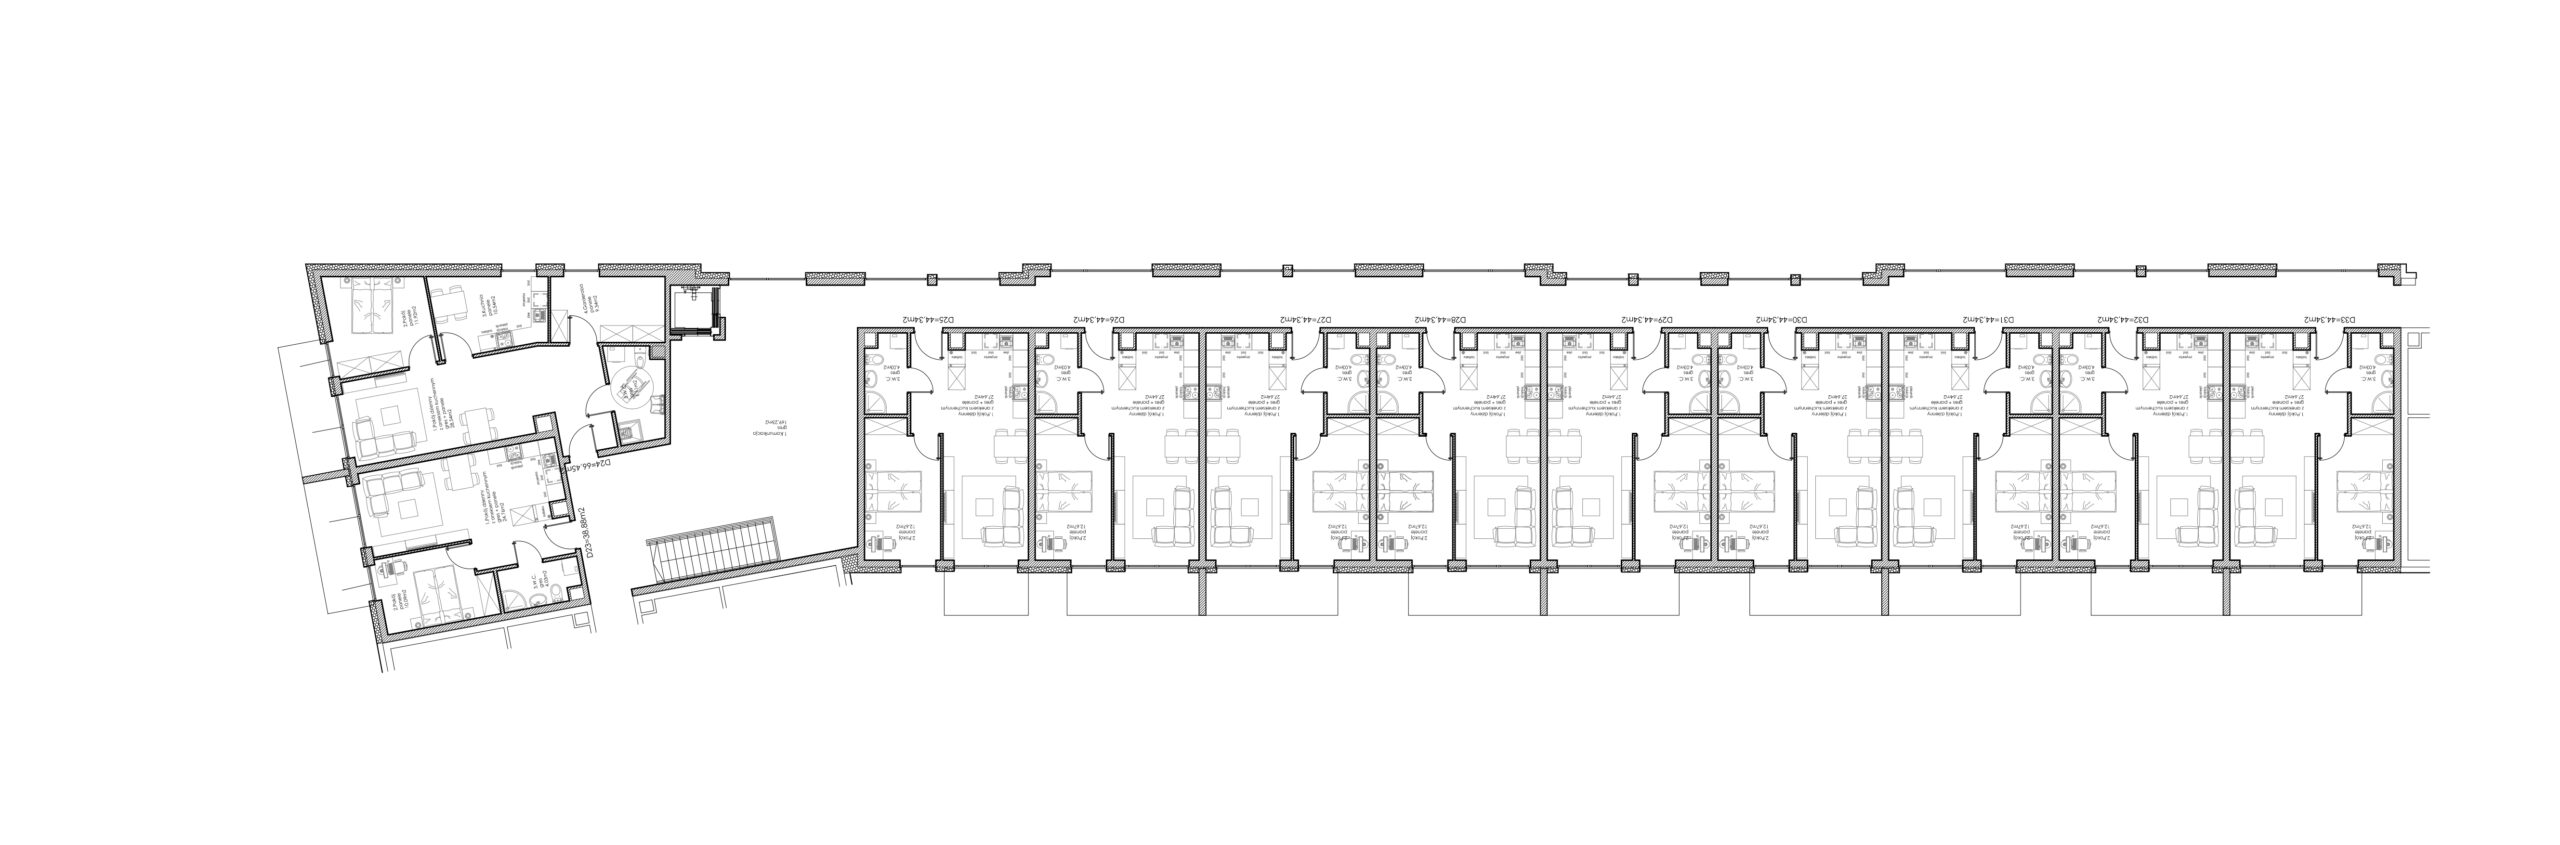 Osiedle Lniane – Segment D – Piętro II